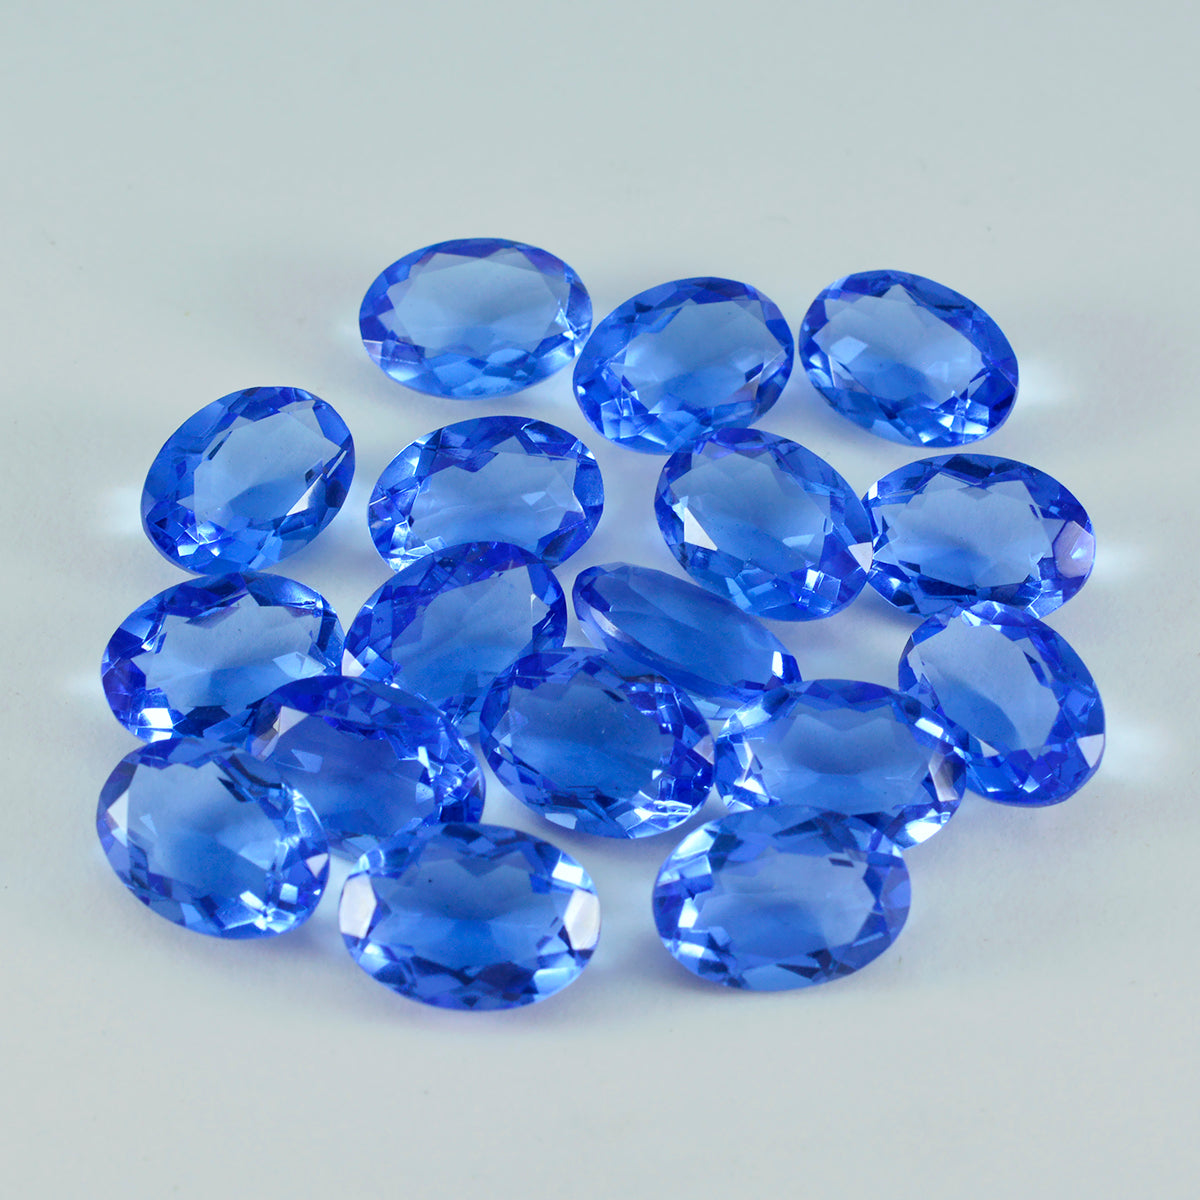 riyogems 1шт синий сапфир cz ограненный 7x9 мм драгоценные камни овальной формы качества A1